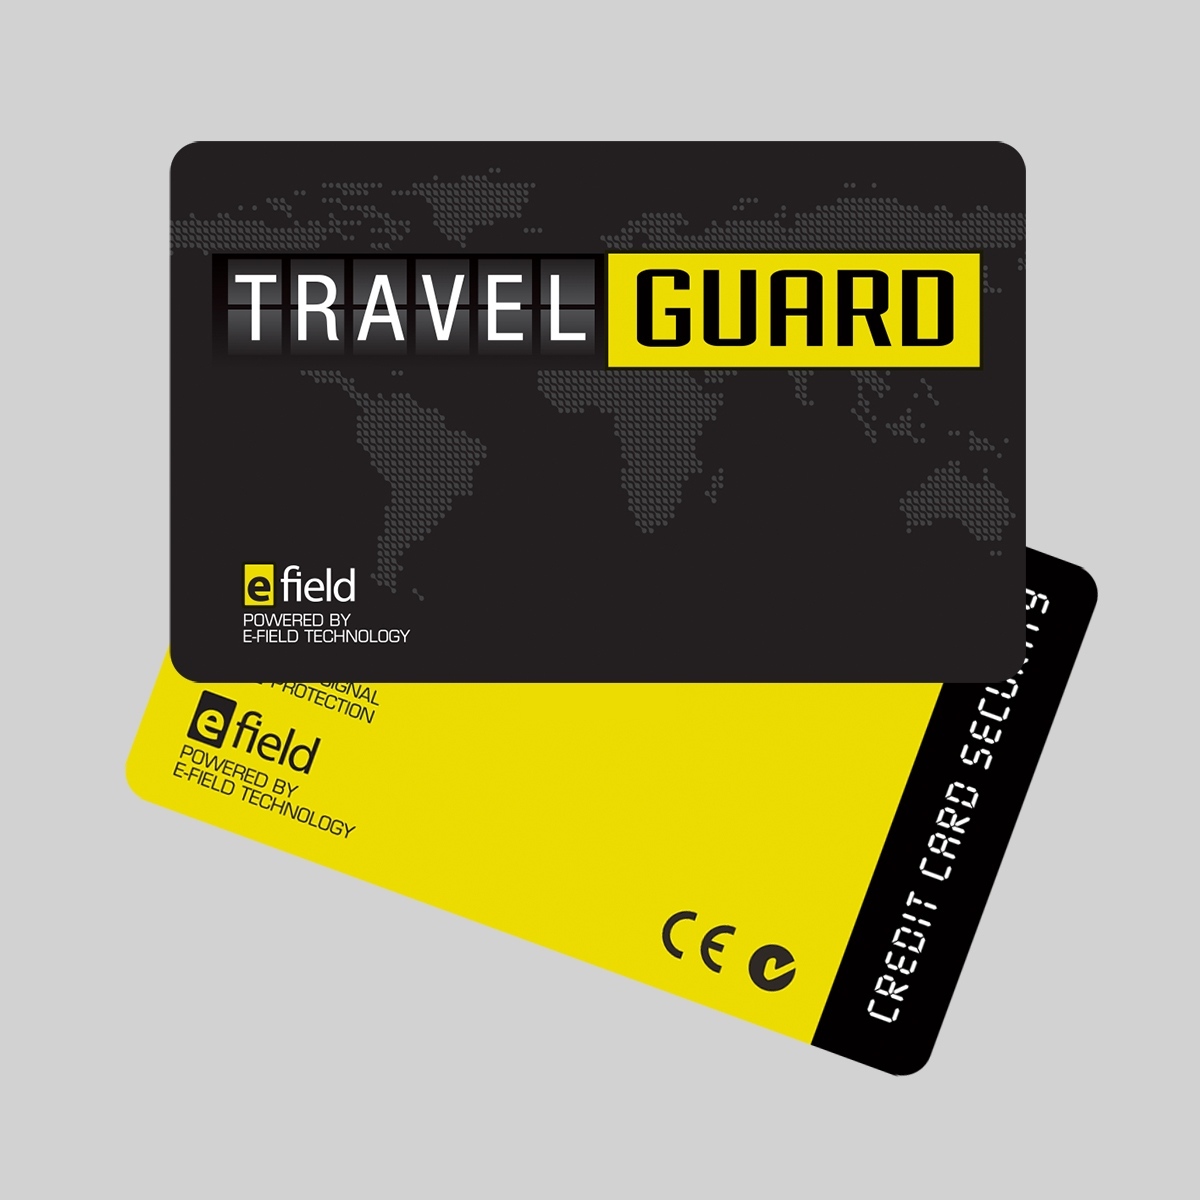 travel guard lodging expense bundle